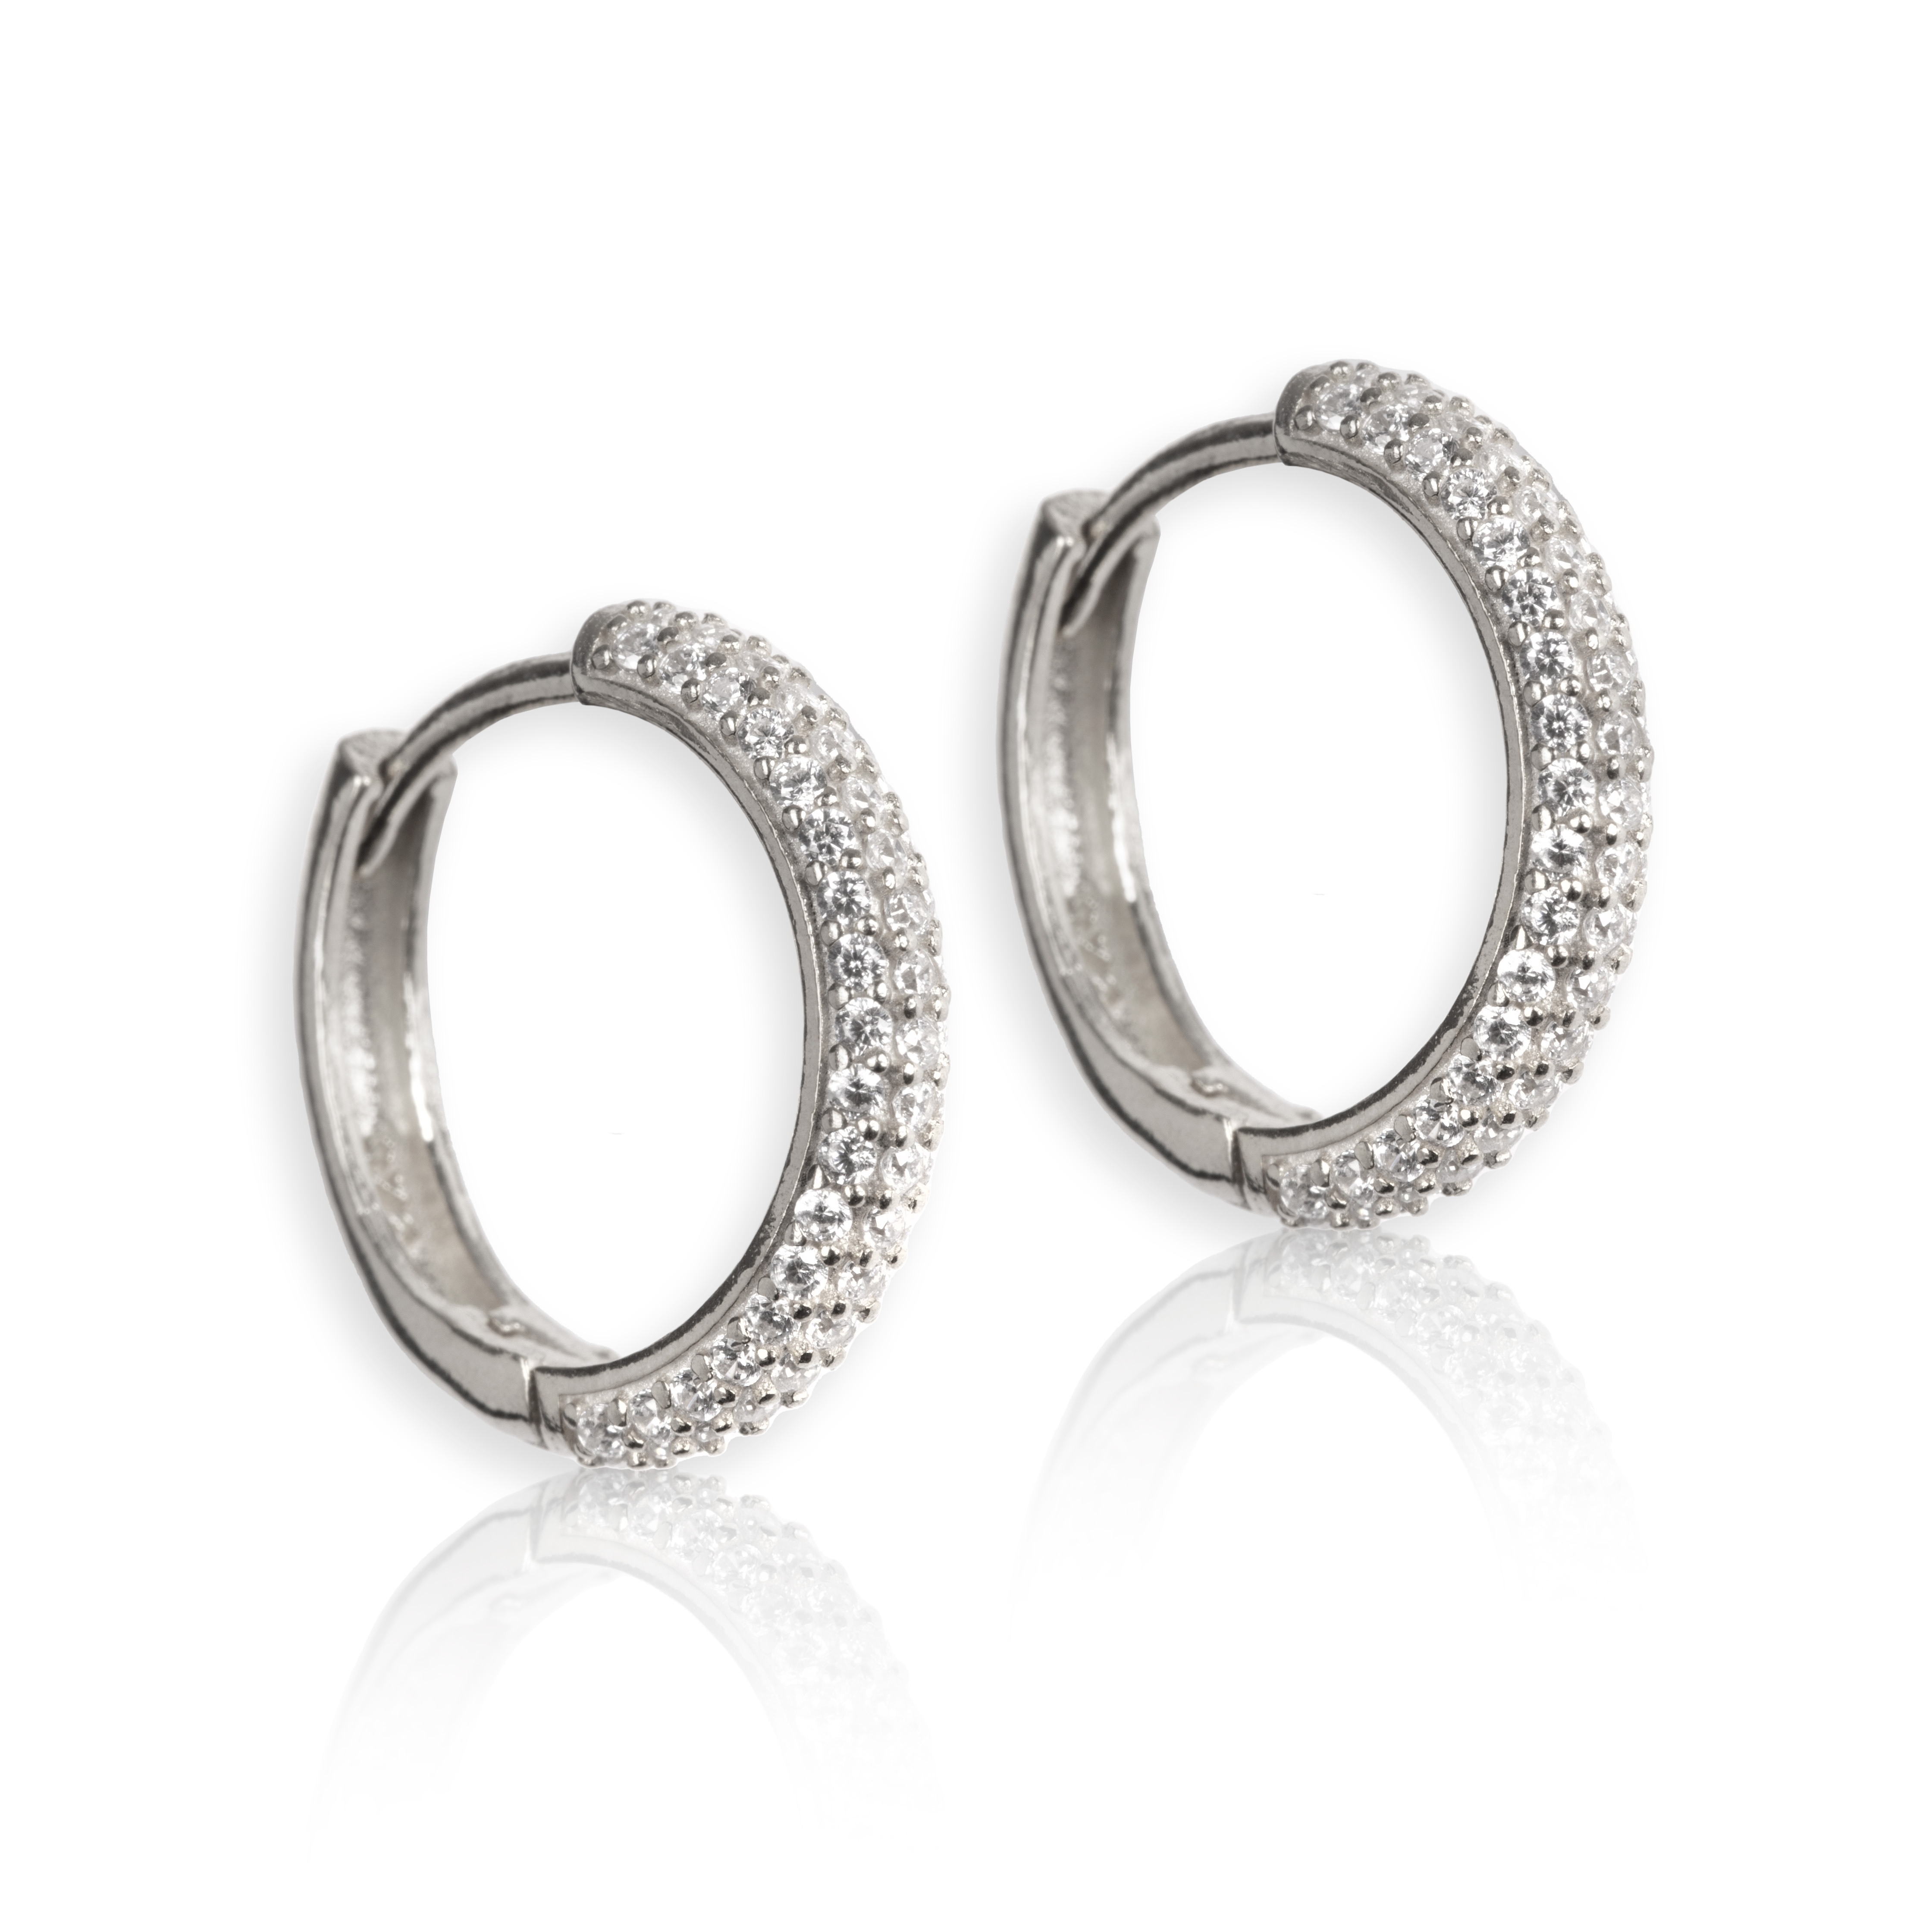 Ohrringe in Silber mit weißen Steinen